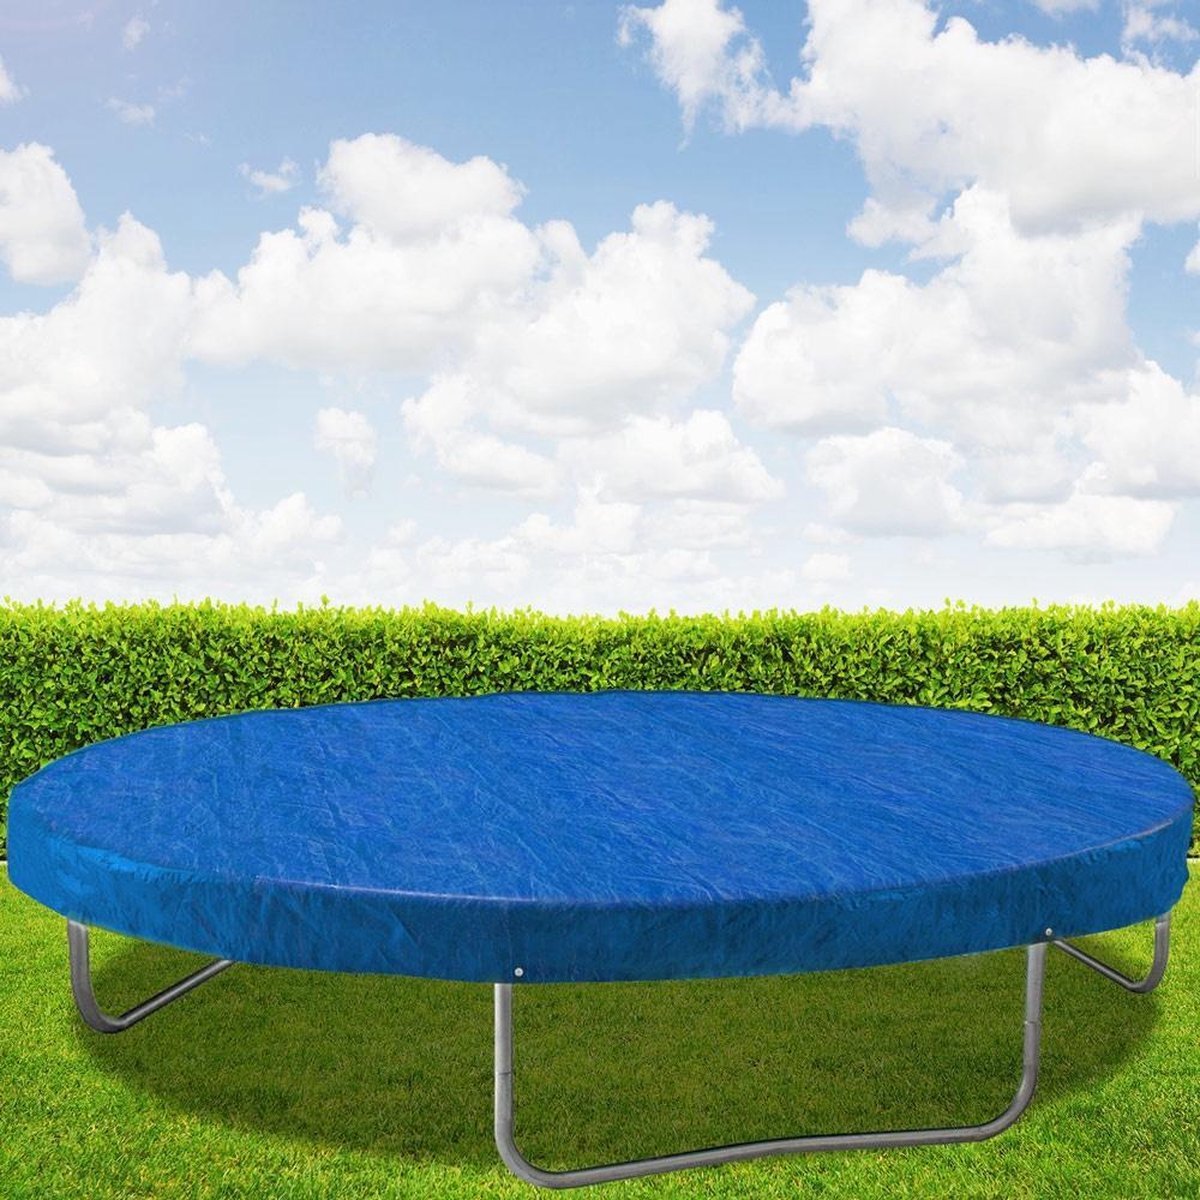 Monzana Afdekking trampoline blauw Ø183cm